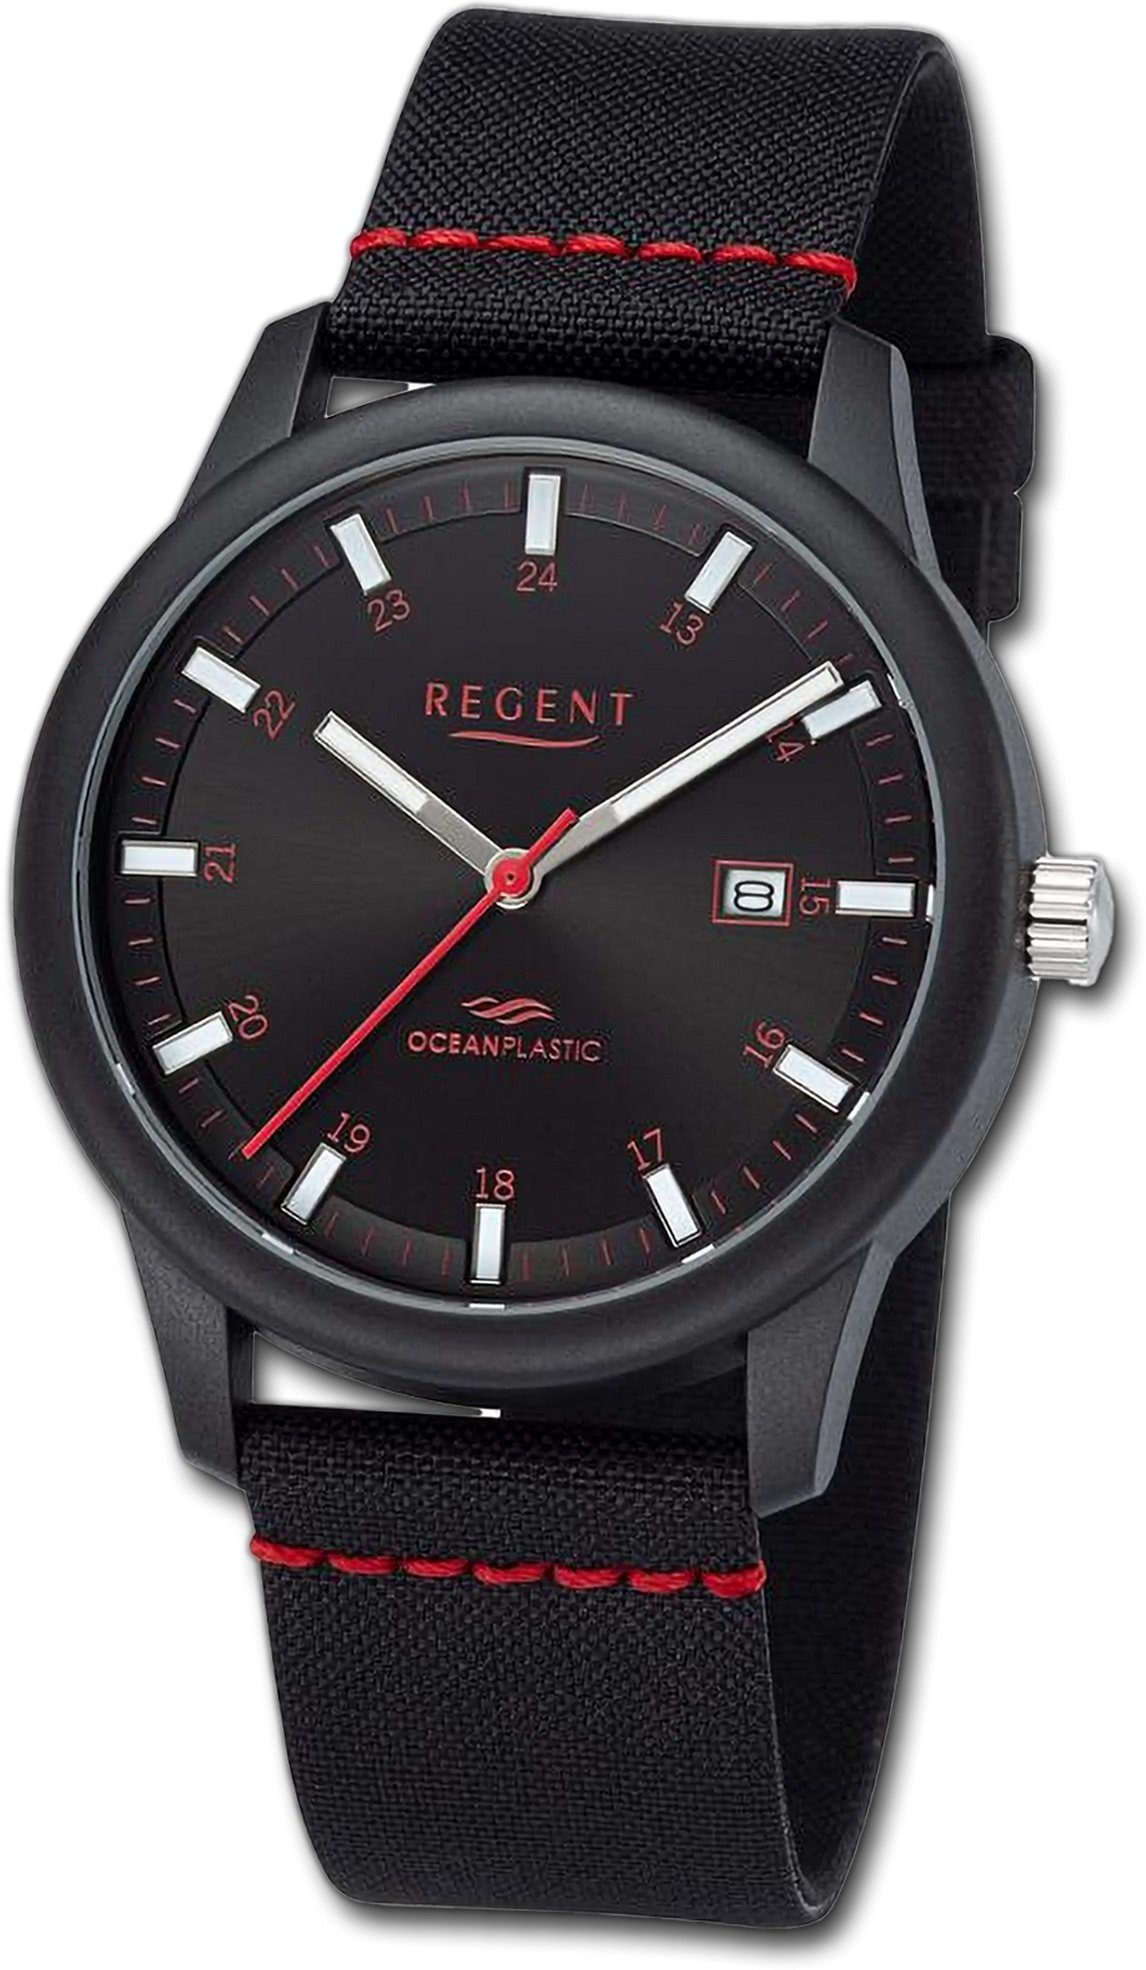 groß Regent Nylonarmband Gehäuse, Herren rundes Quarzuhr rot, Armbanduhr schwarz, Analog, Herrenuhr 40mm) (ca. Regent